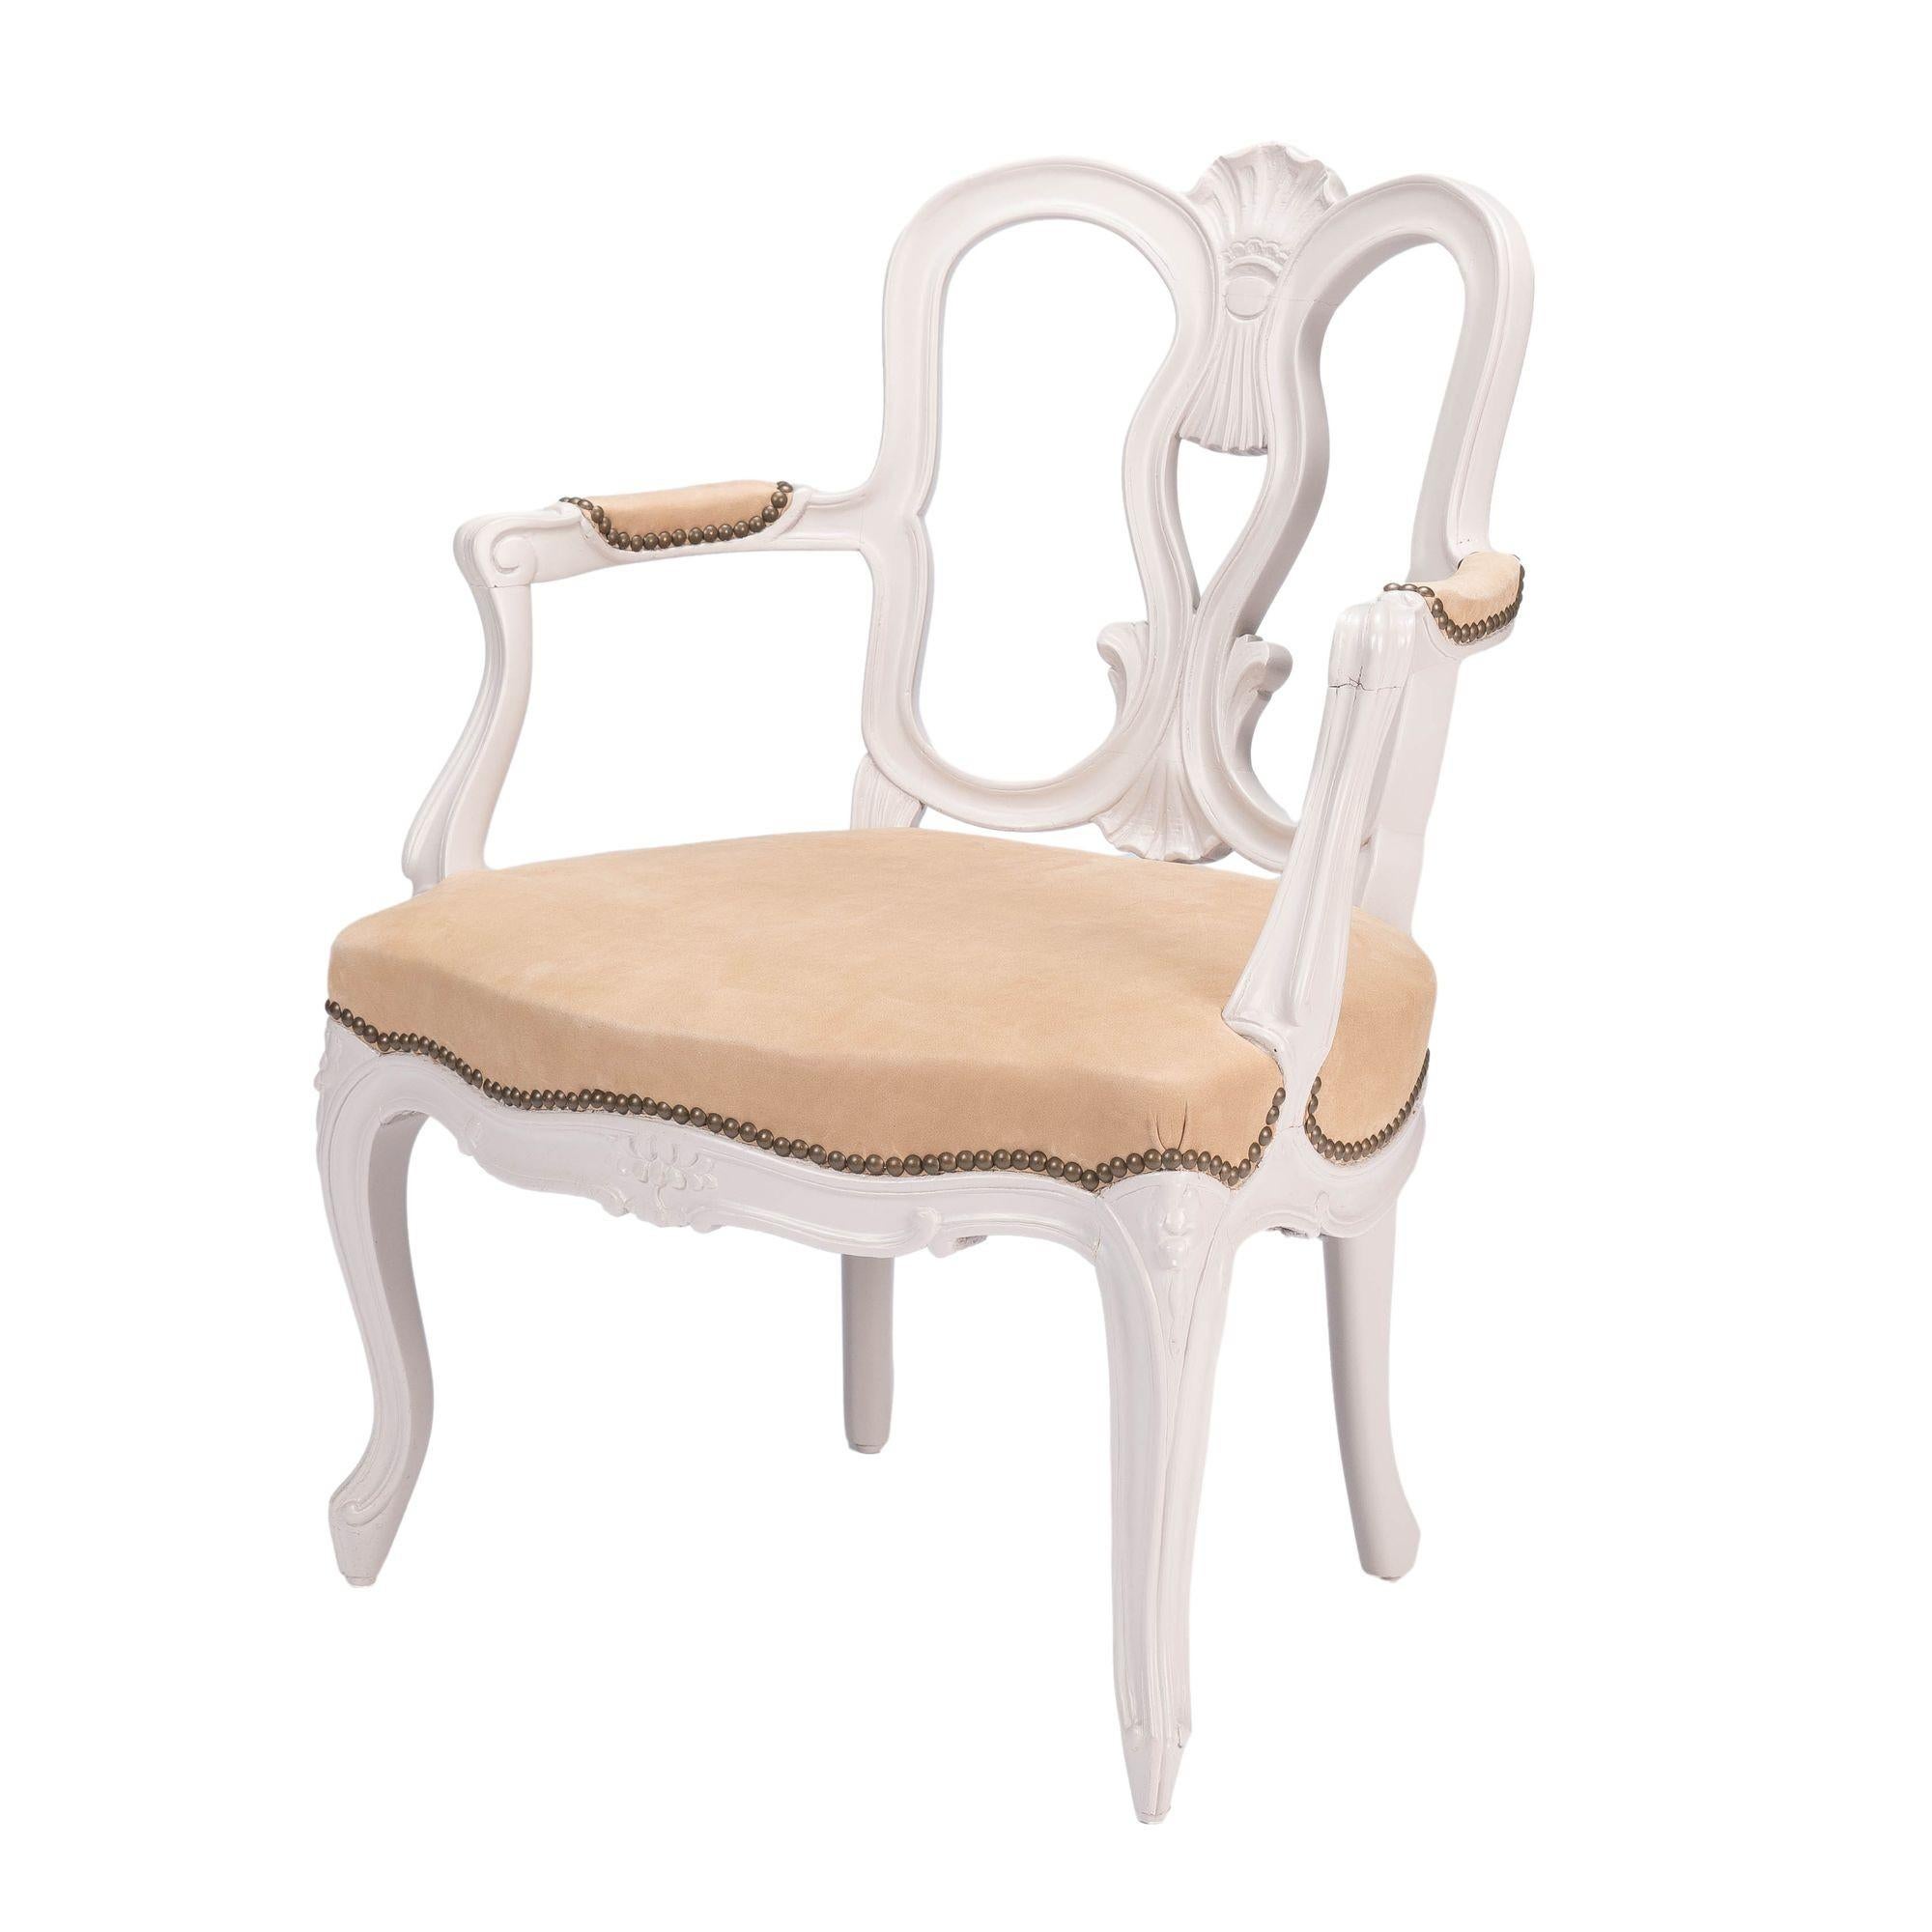 Fauteuil aus lackiertem Buchenholz im Louis XIV-Stil mit Sitz und Armlehnen aus italienischem, gegerbtem Leder und mit Messingnägeln verziert. Der Stuhlrahmen wurde neu verleimt, stabilisiert und neu lackiert. Der Sitz ist neu gepolstert